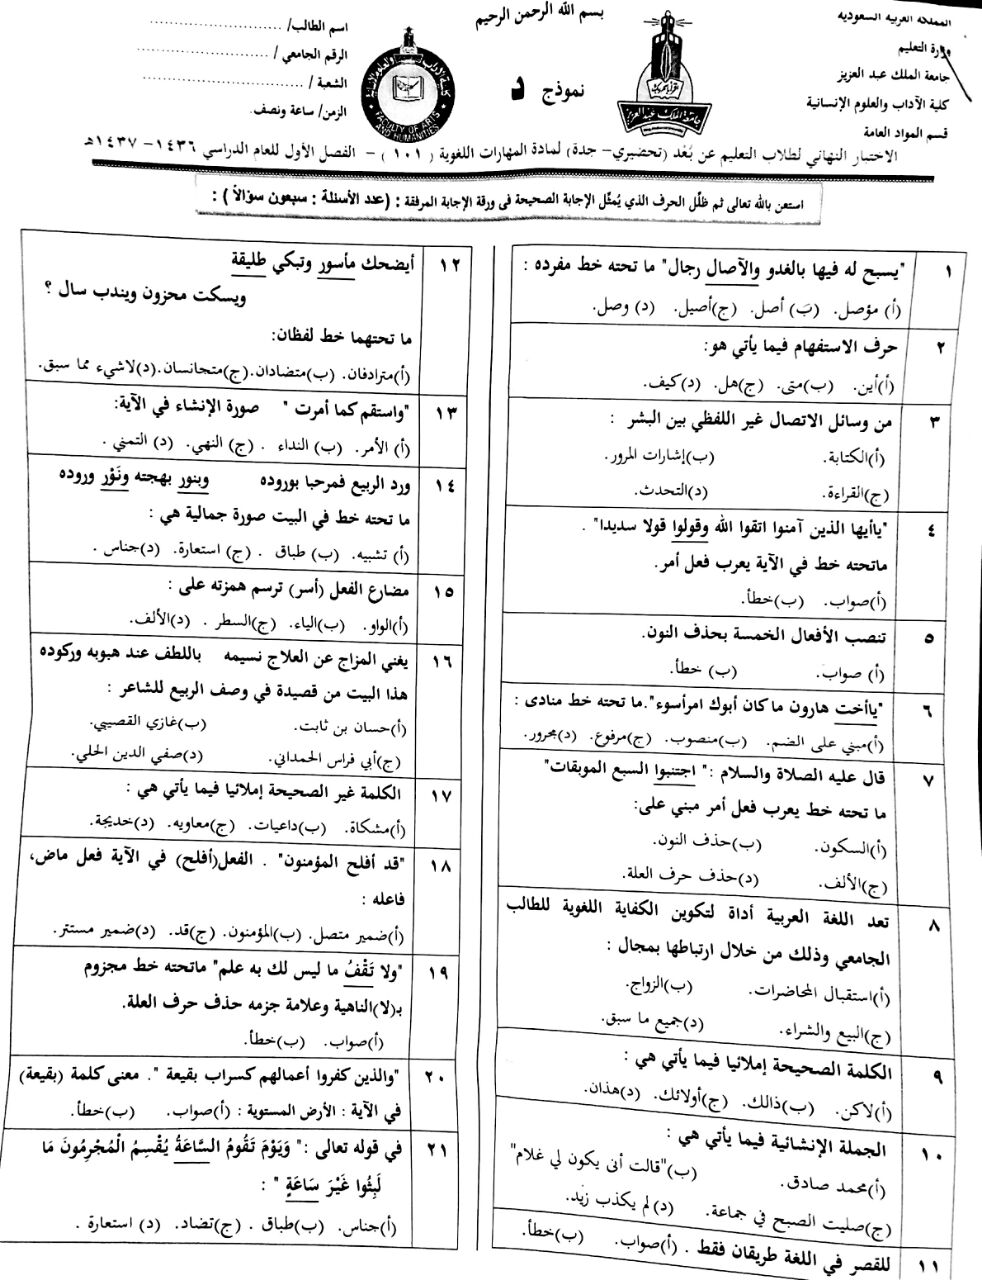 اسئلة المهارات اللغوية arab 101 الفصل الأول 1437هـ نموذج د عن بعد